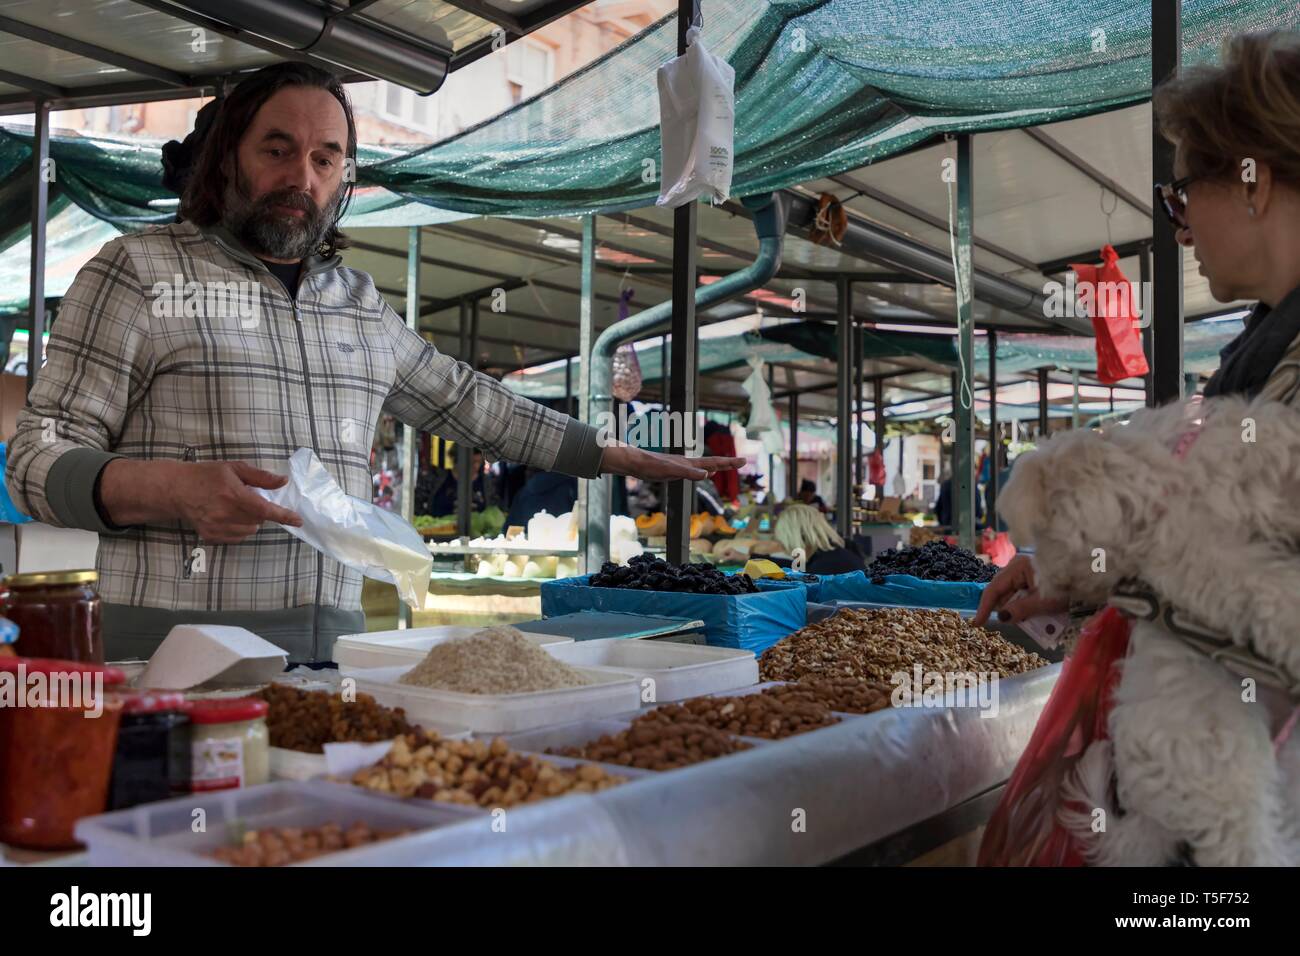 Zemun, Serbie, 19 avril 2019 : marché vert scène avec vendeur vente de noix & fruits séchés et lady tenant dans ses bras un petit chien Banque D'Images